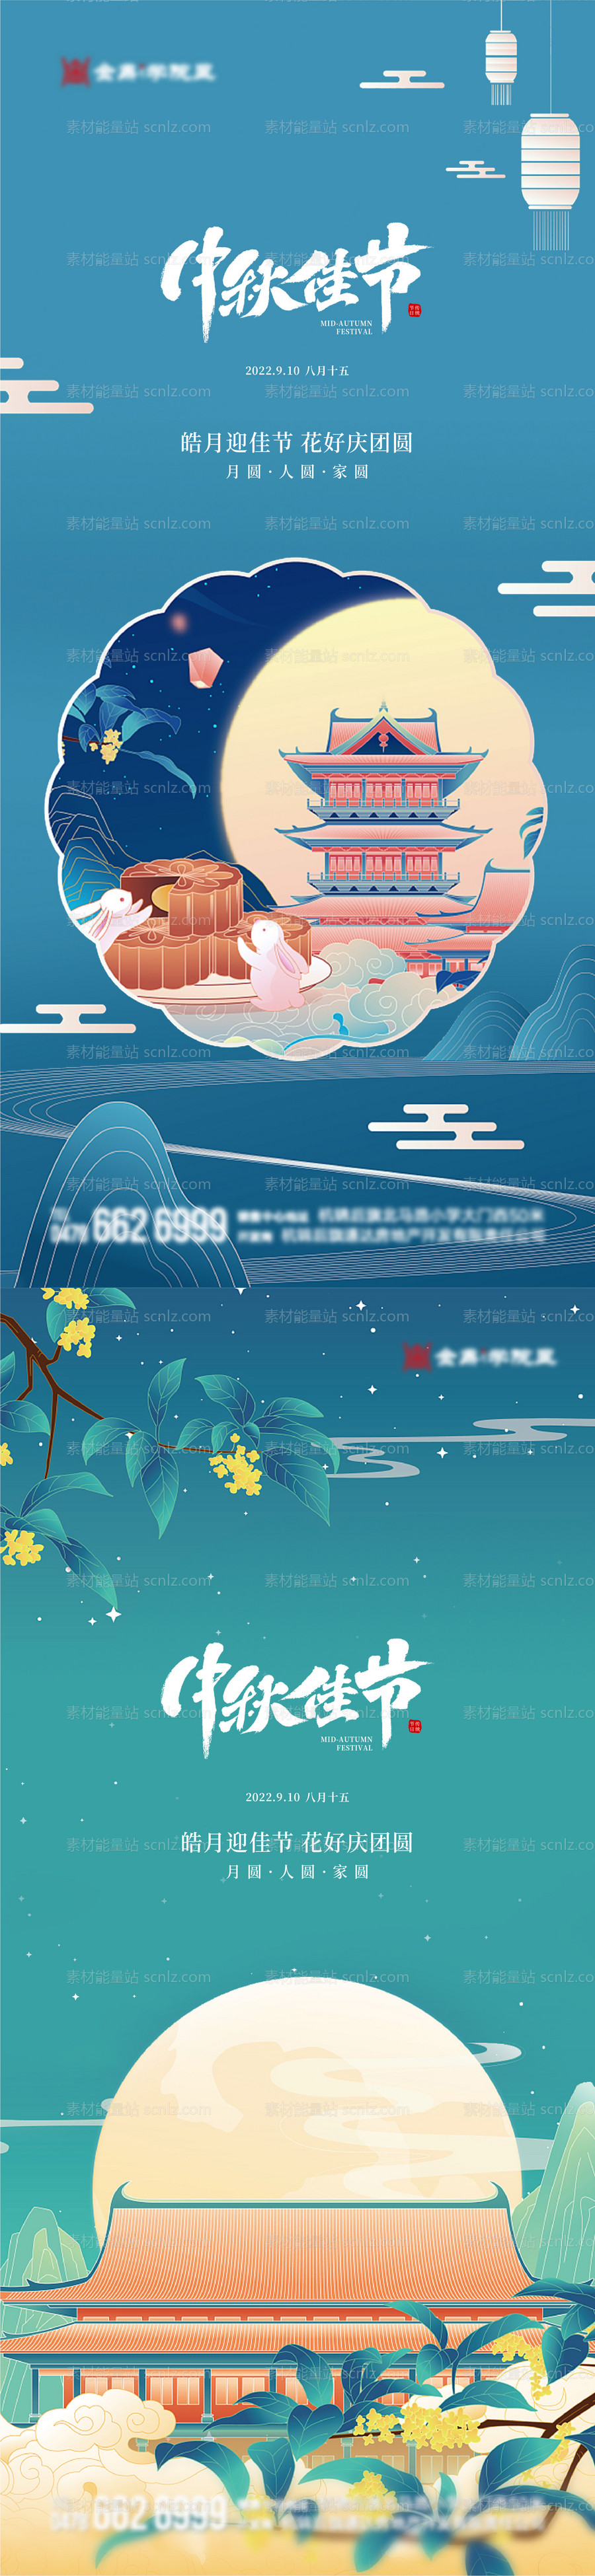 素材能量站-中秋节海报